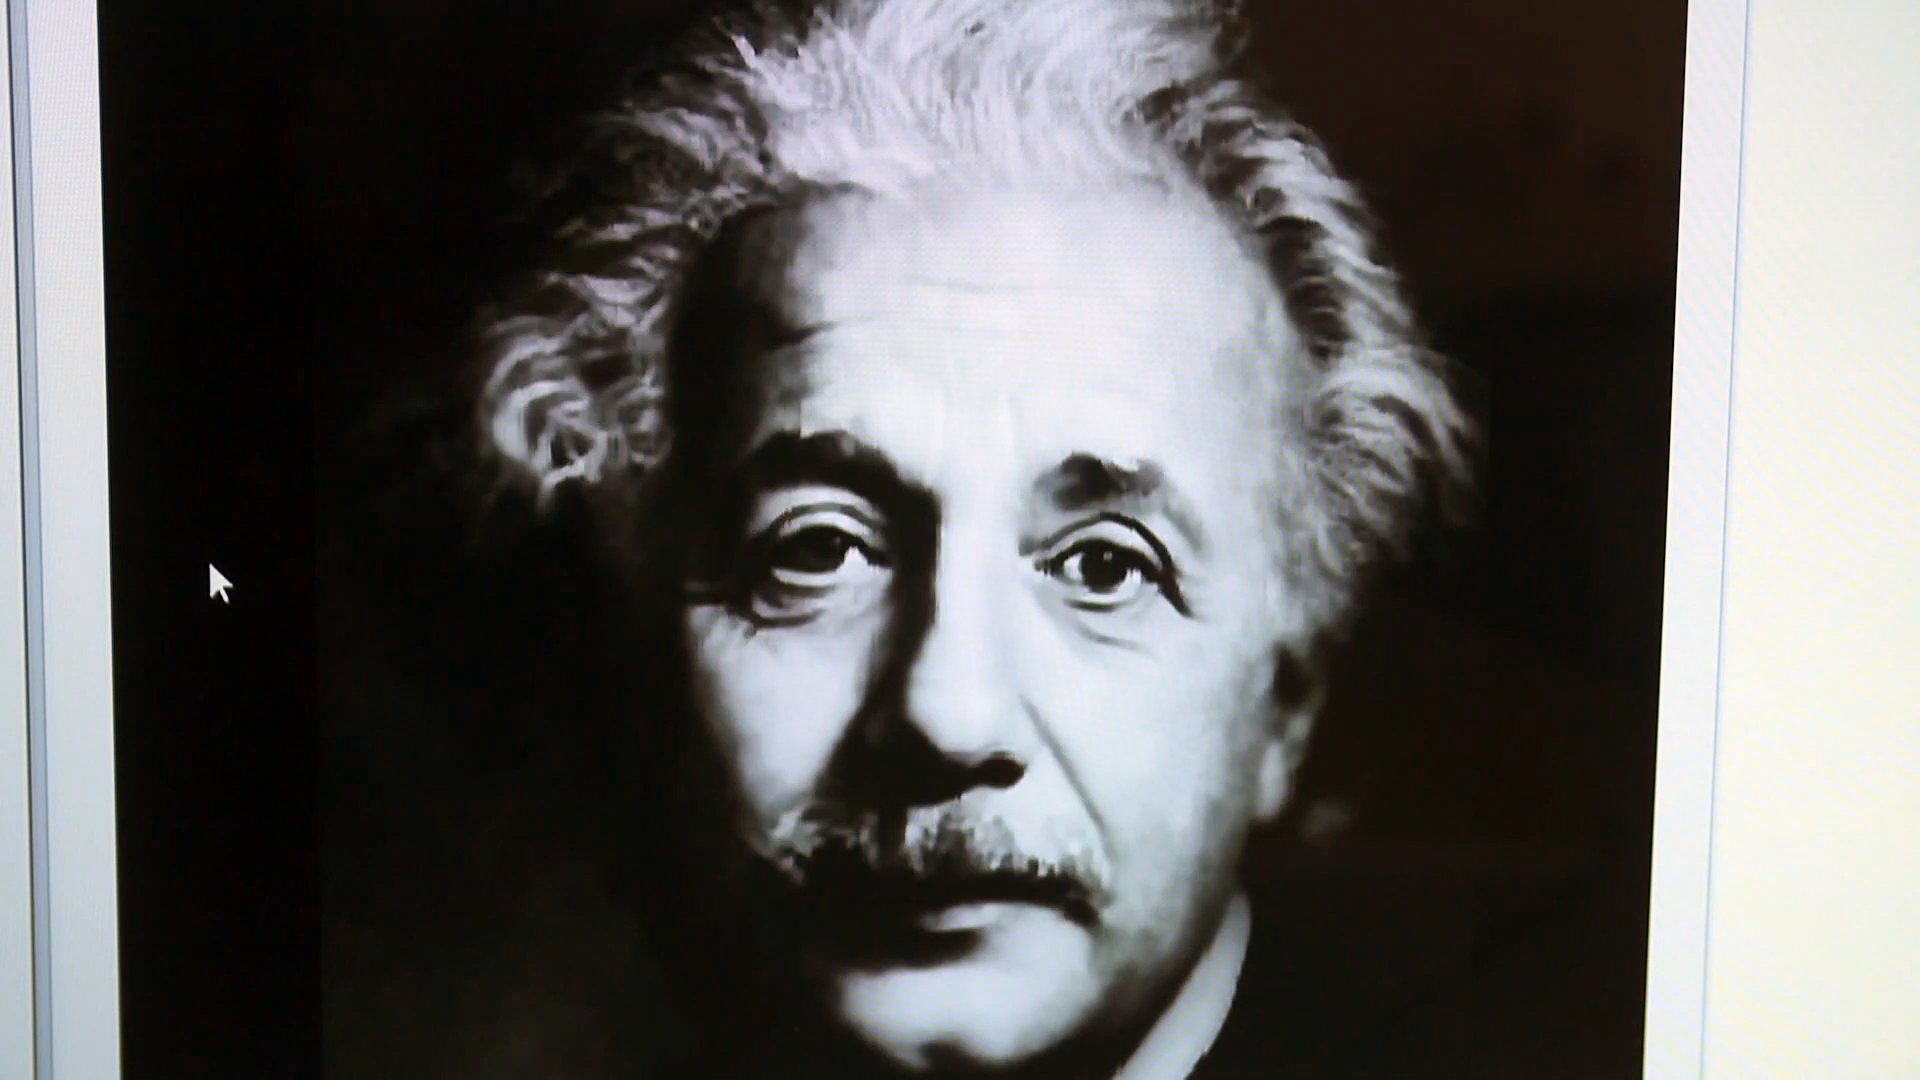 Imagen manipulada de Albert Einstein